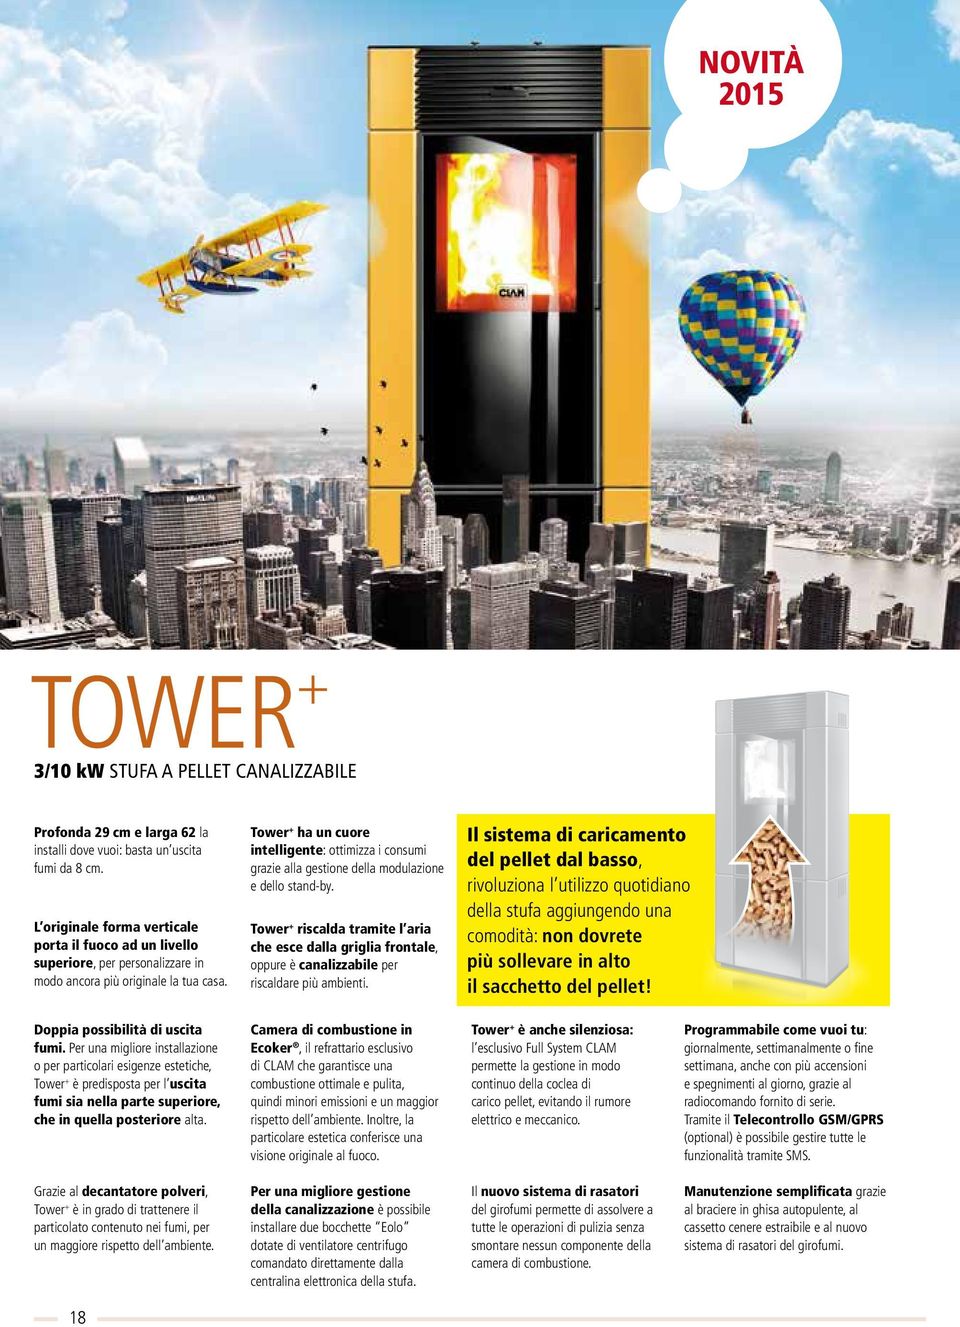 Tower + ha un cuore intelligente: ottimizza i consumi grazie alla gestione della modulazione e dello stand-by.